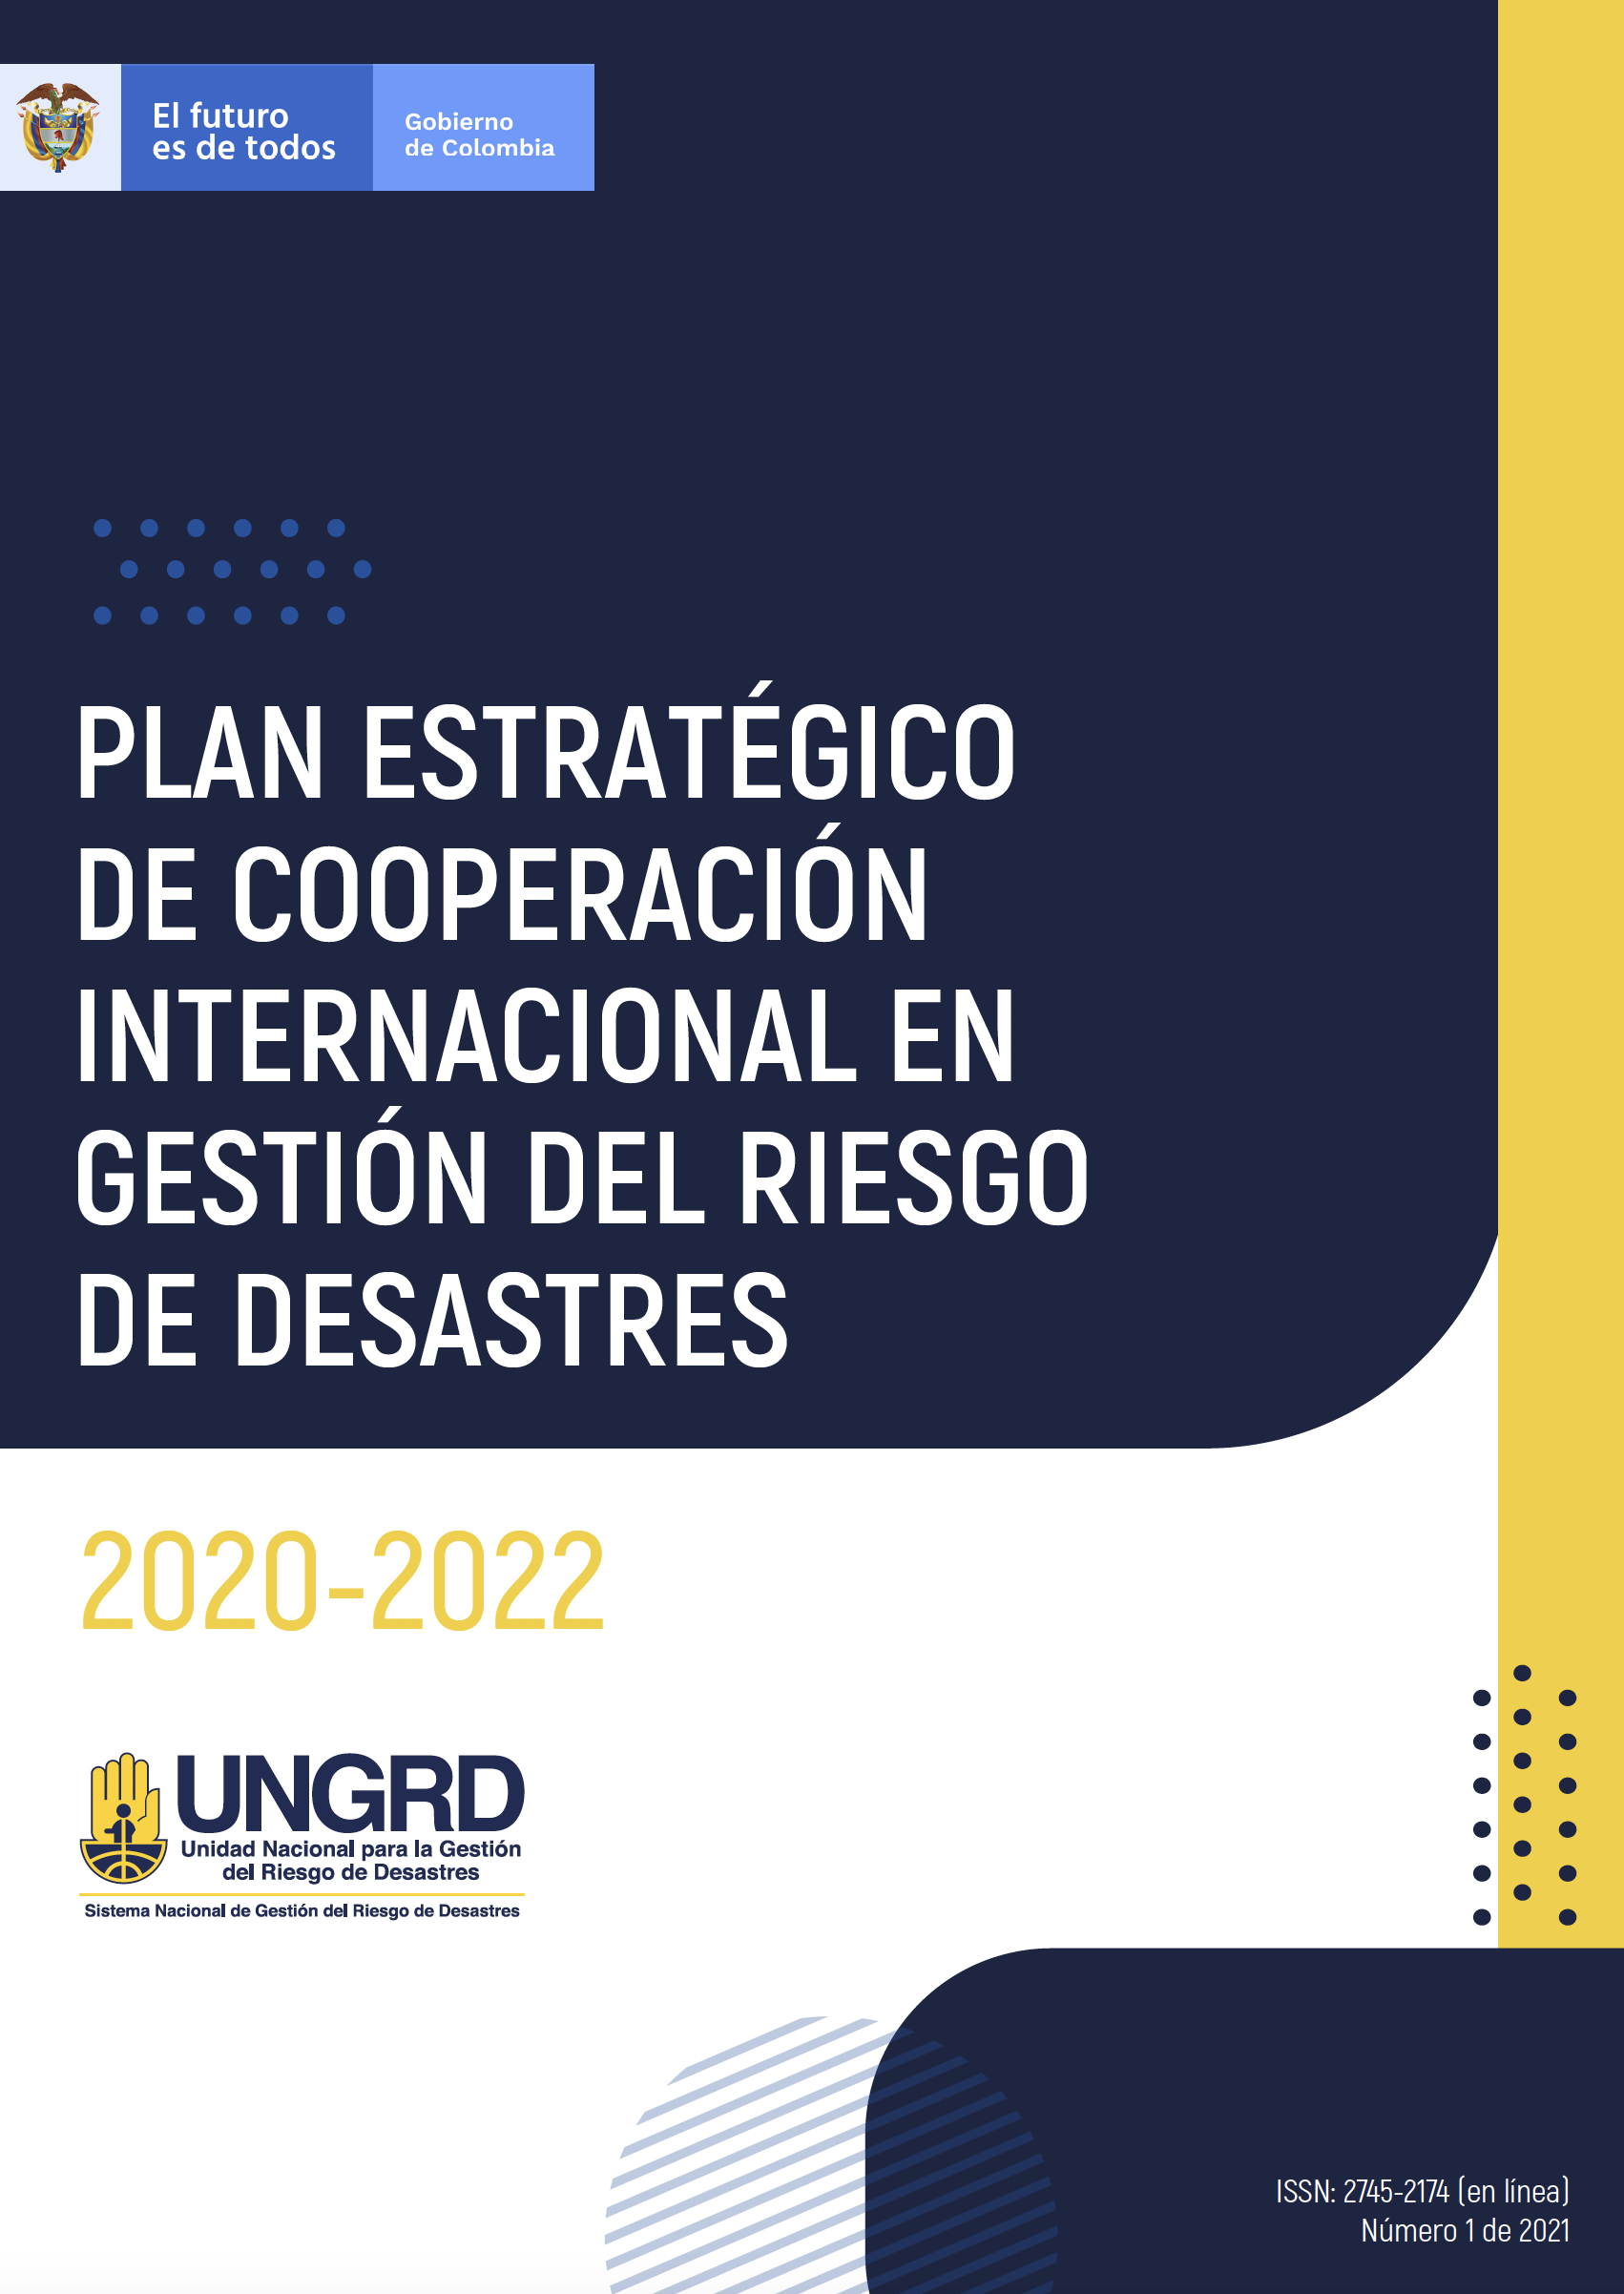 Plan estratégico de cooperación internacional en gestión del riesgo de desastres 2020-2022